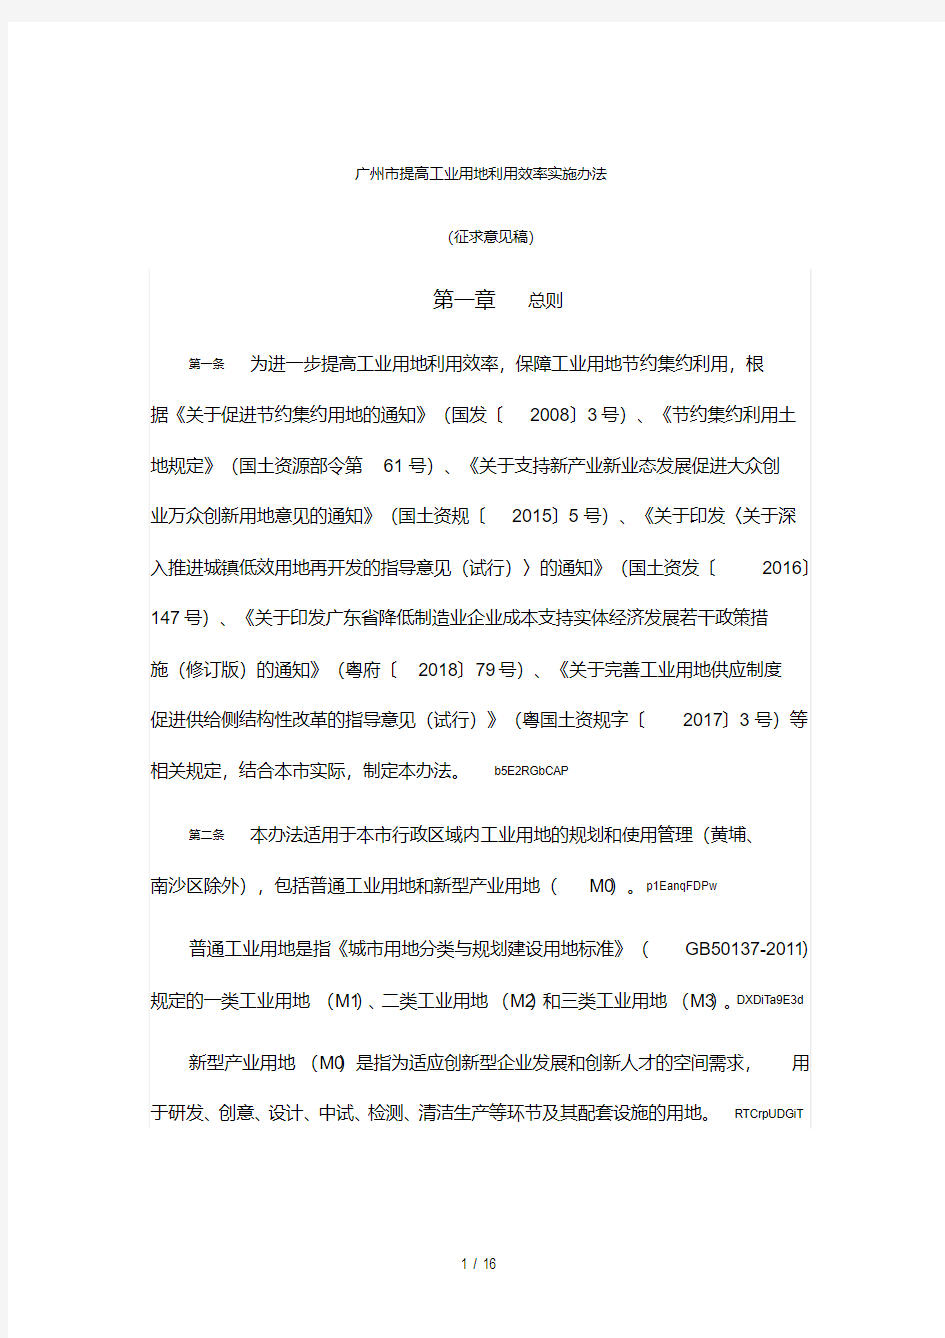 广州市提高工业用地利用效率实施办法(20200810235146).pdf